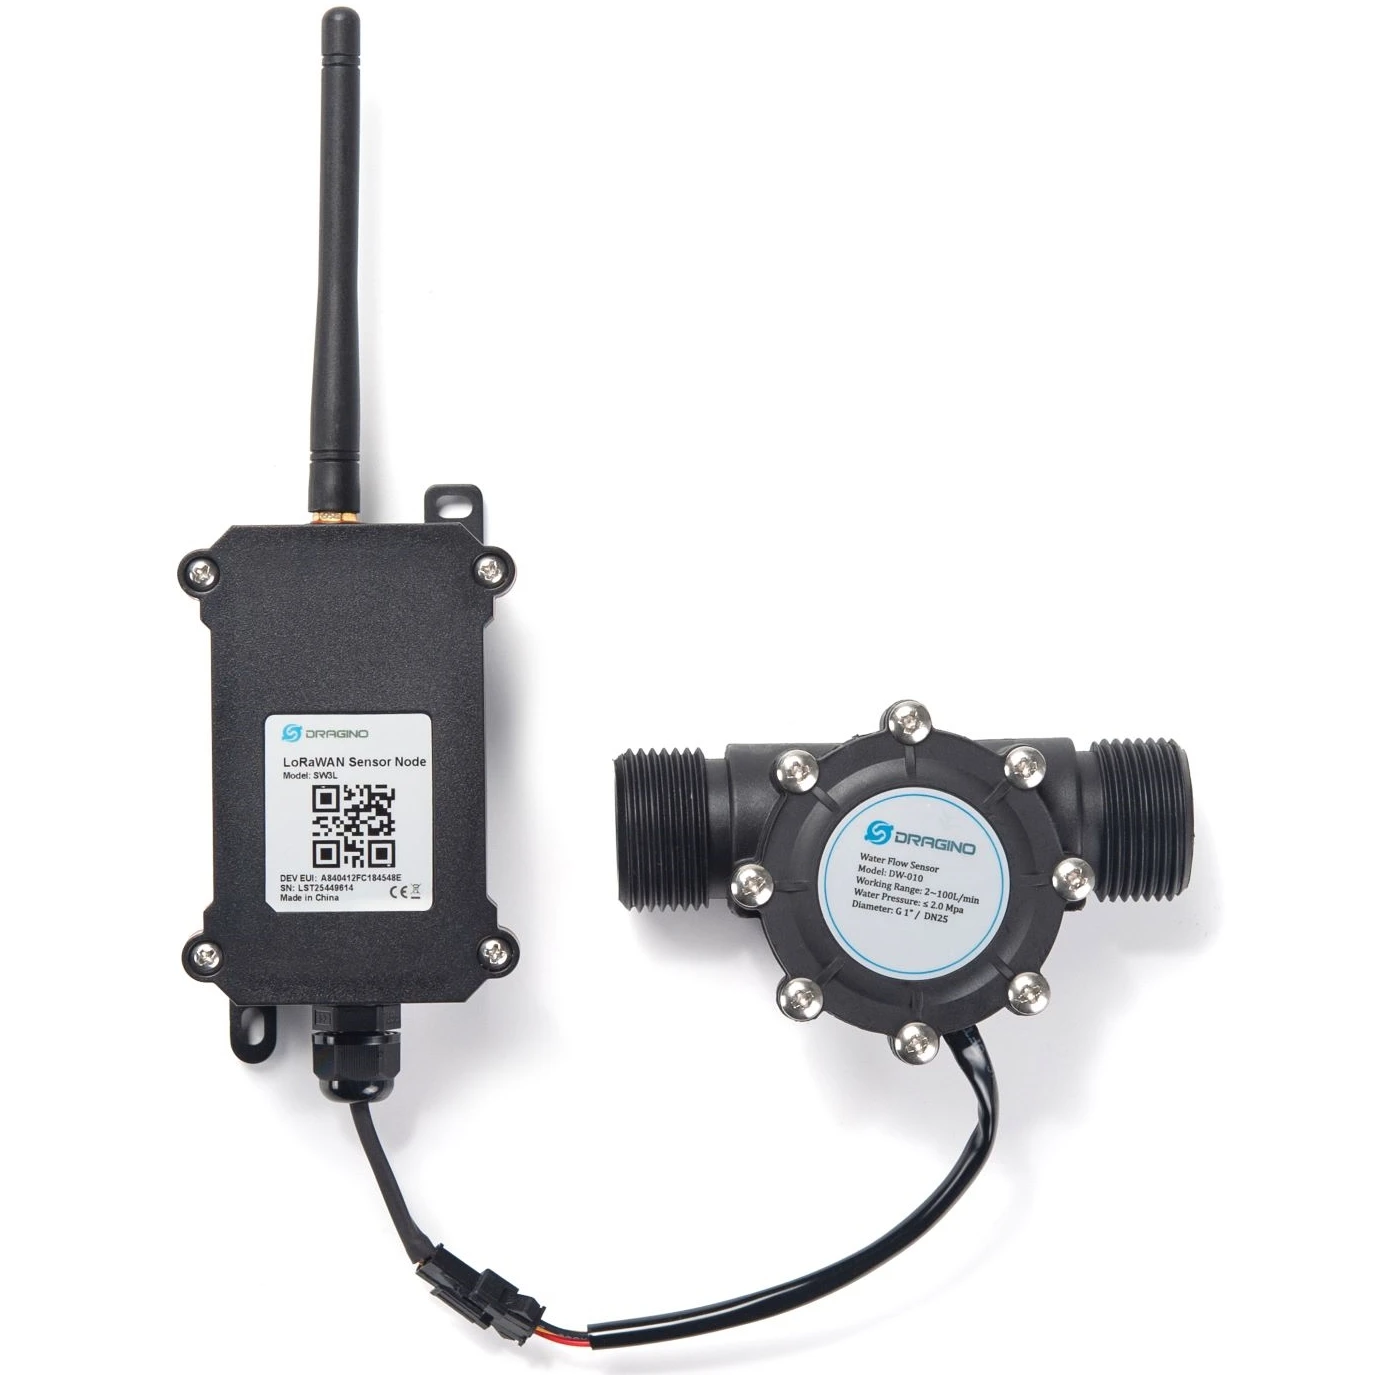 

Dragino original SW3L LoRaWAN Outdoor Flow Sensor detects water flow volume and uplink to IoT server via LoRaWAN network